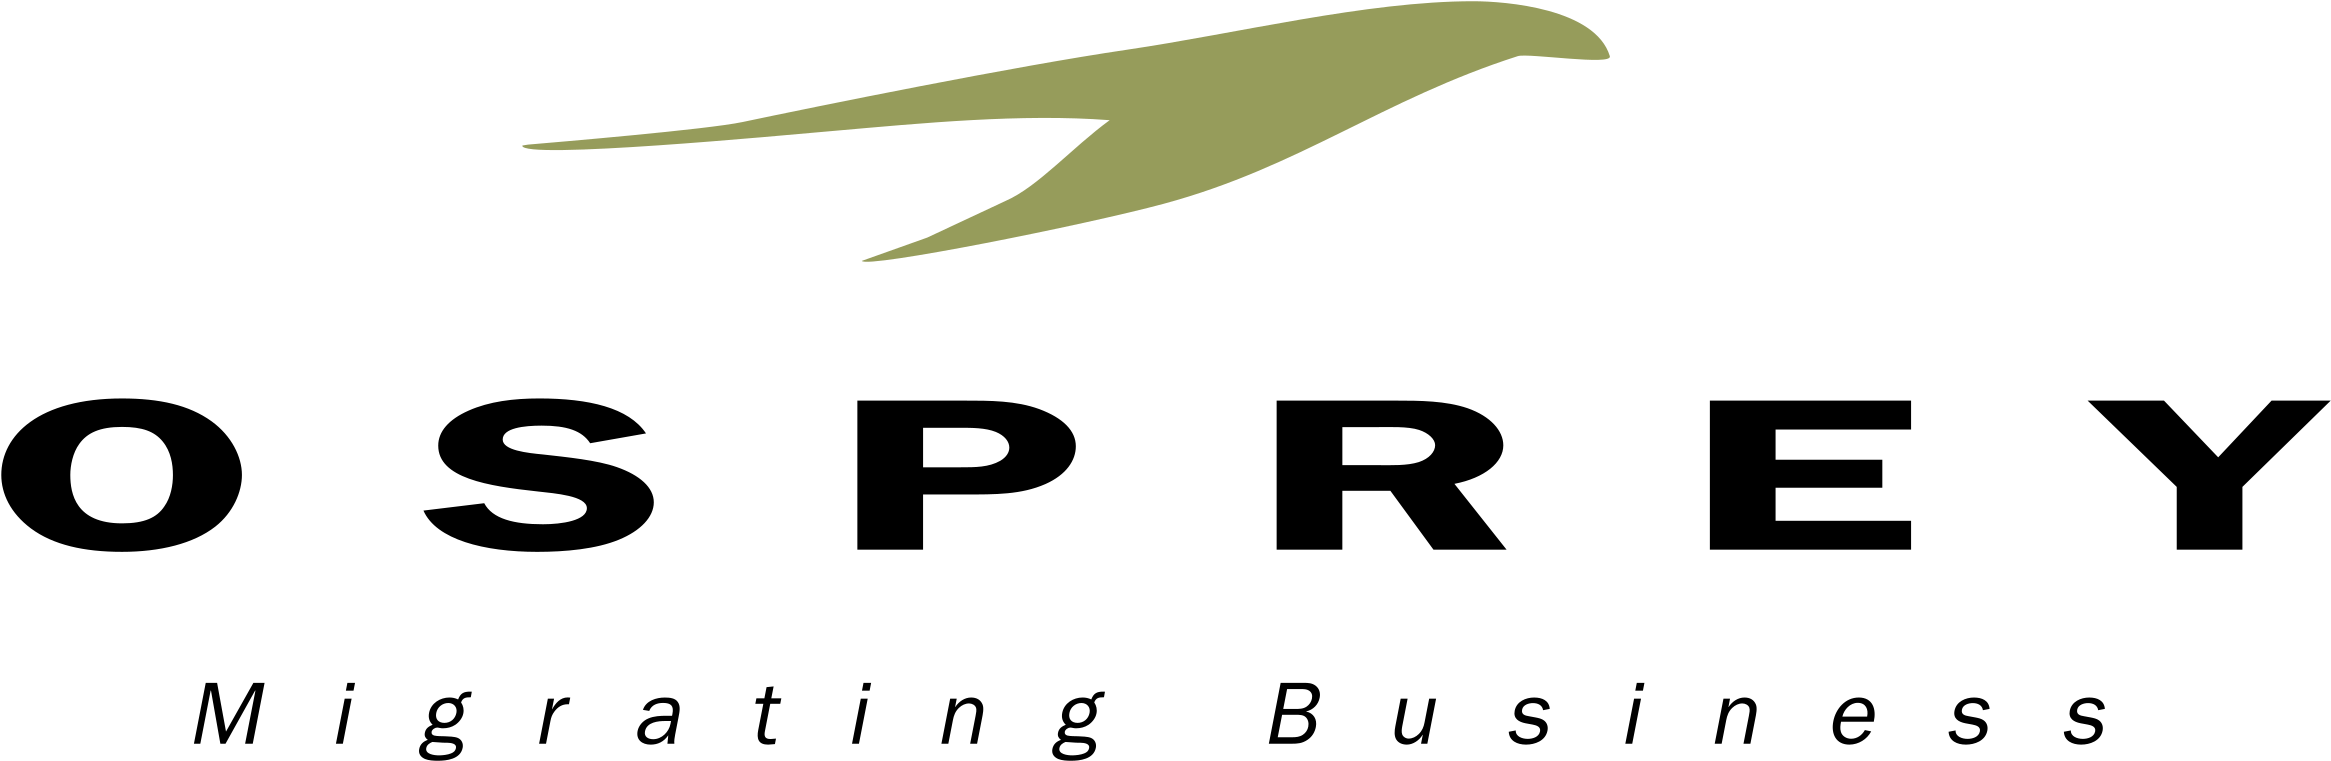 Osprey Logo Png Transparent - Osprey Clipart (2400x2400), Png Download